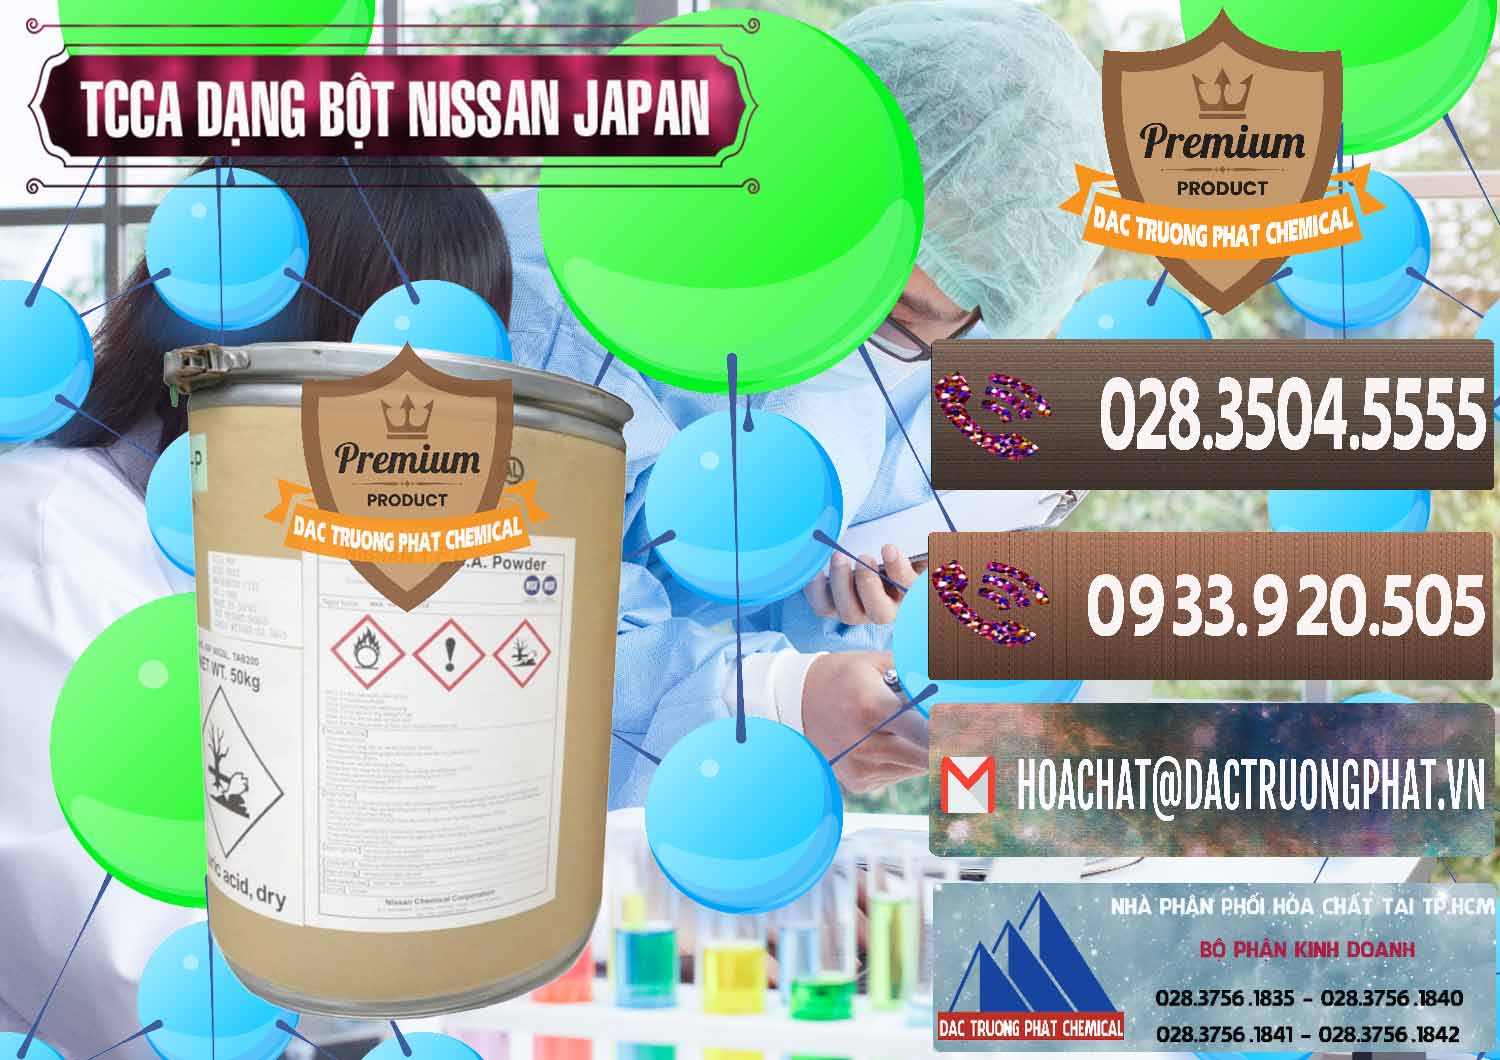 Nơi bán - cung ứng TCCA - Acid Trichloroisocyanuric 90% Dạng Bột Nissan Nhật Bản Japan - 0375 - Đơn vị chuyên phân phối ( cung ứng ) hóa chất tại TP.HCM - hoachatviet.net